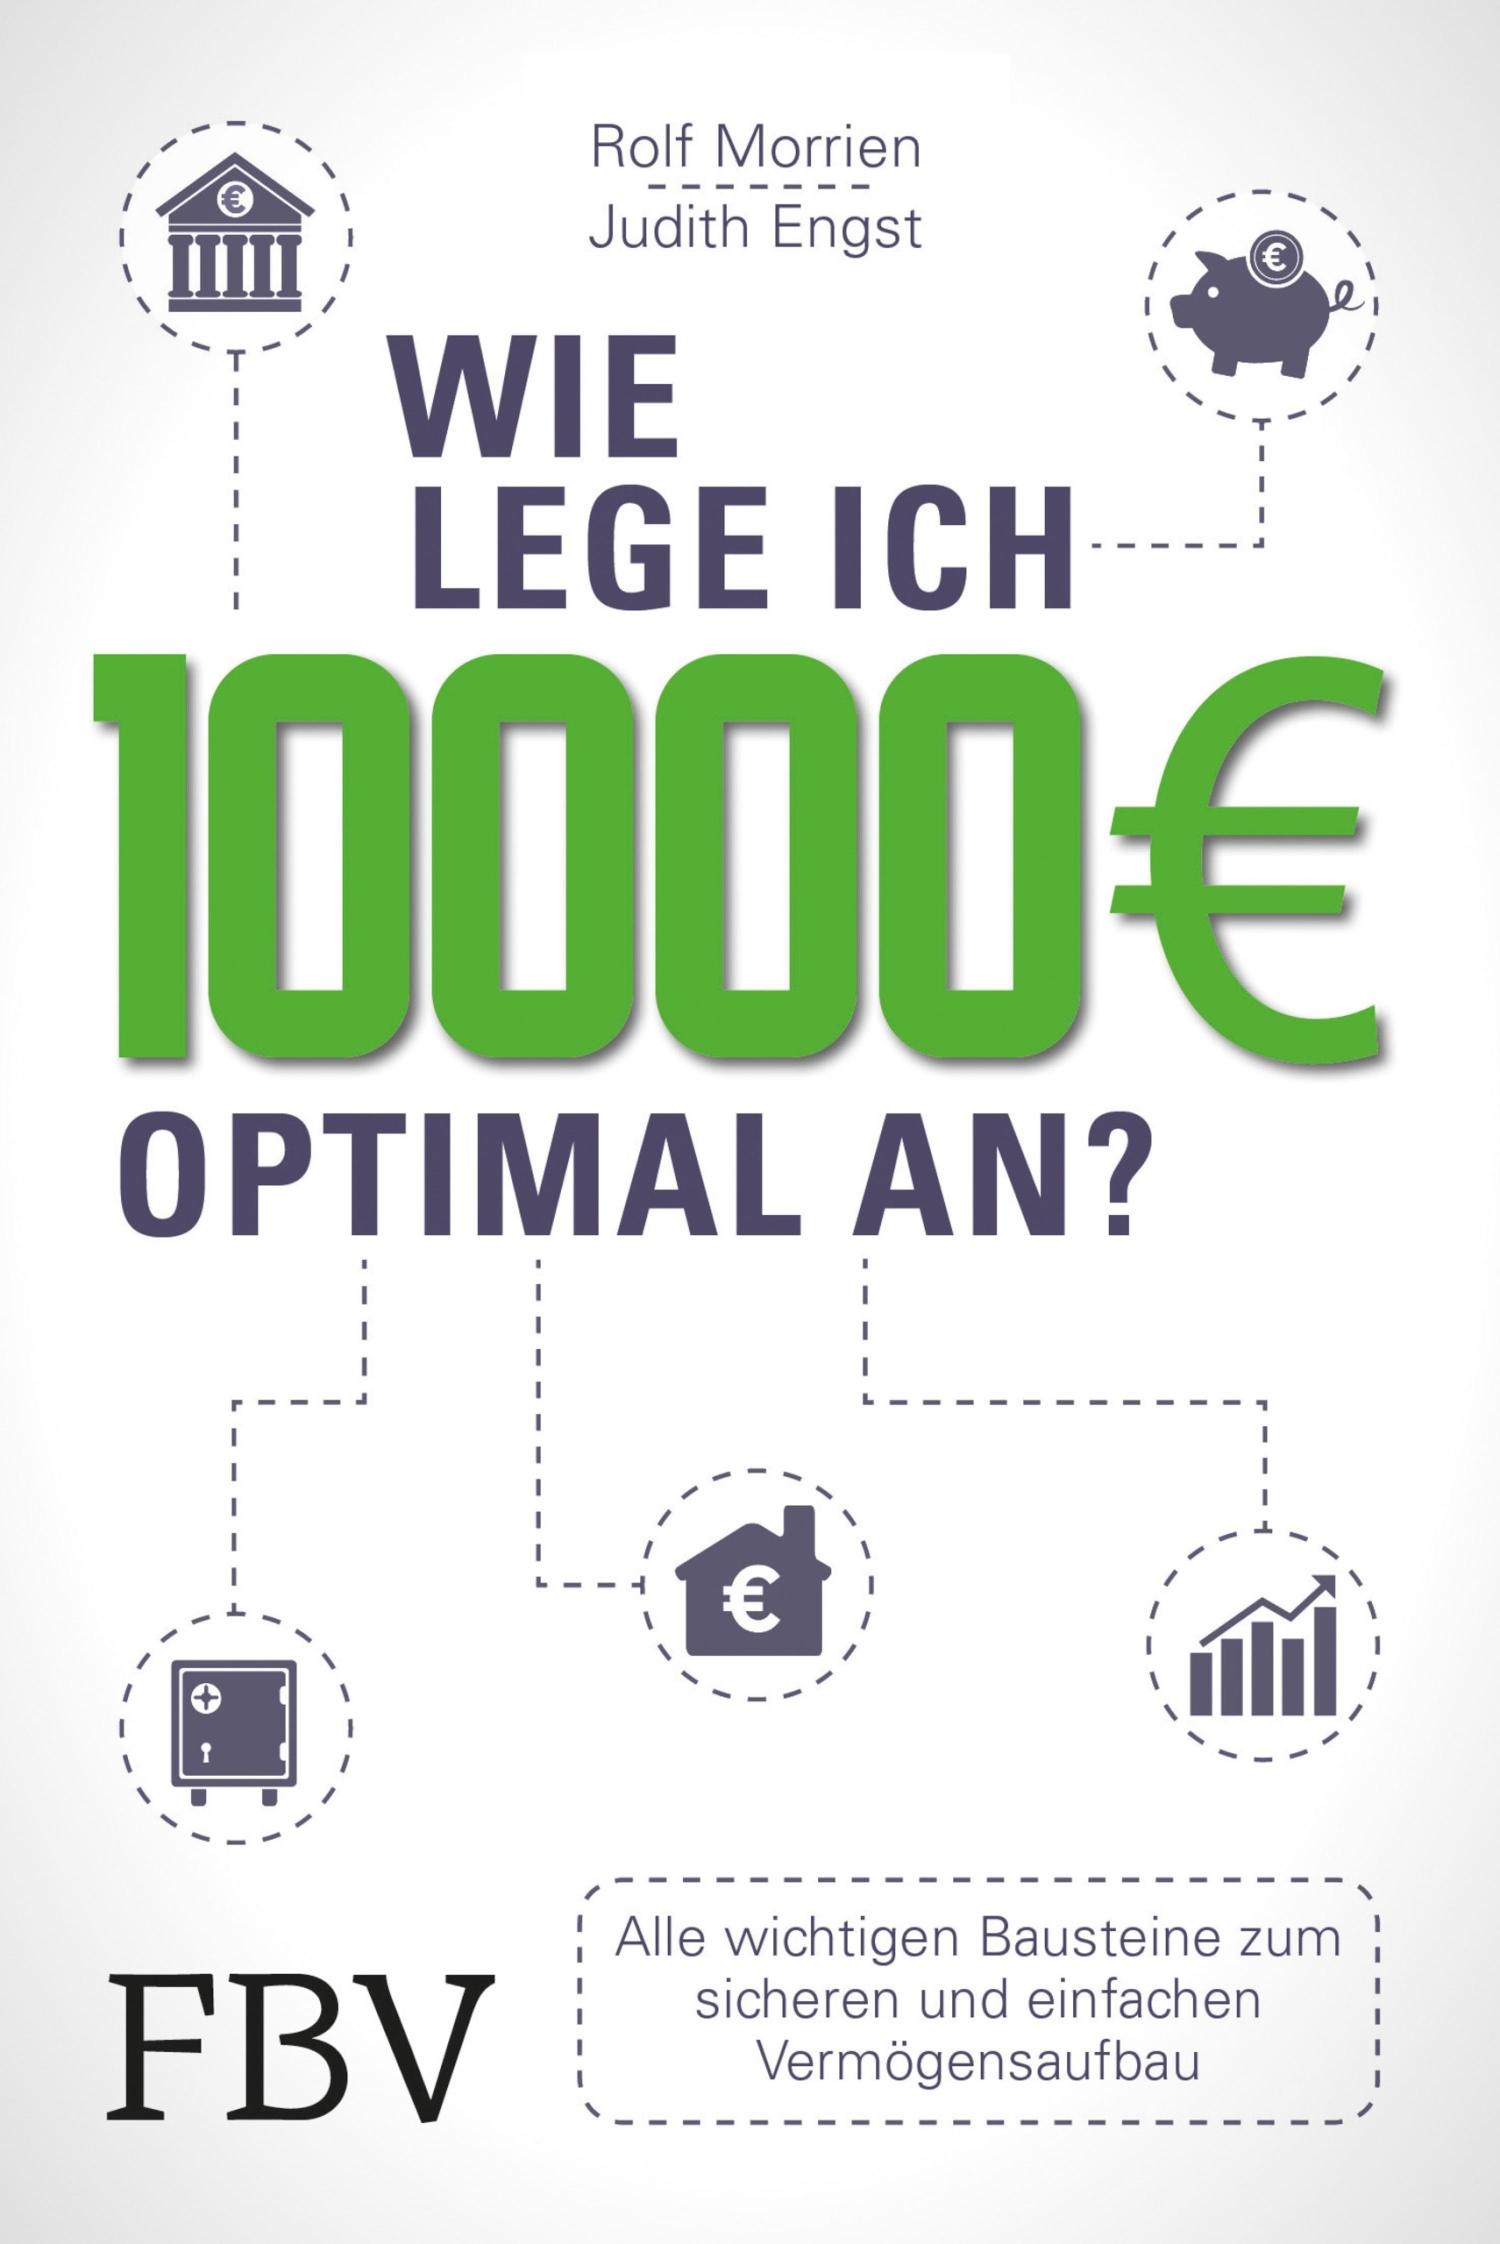 Wie lege ich 10000 Euro optimal an? Alle wichtigen Bausteine zum sicheren und einfachen Vermögensaufbau